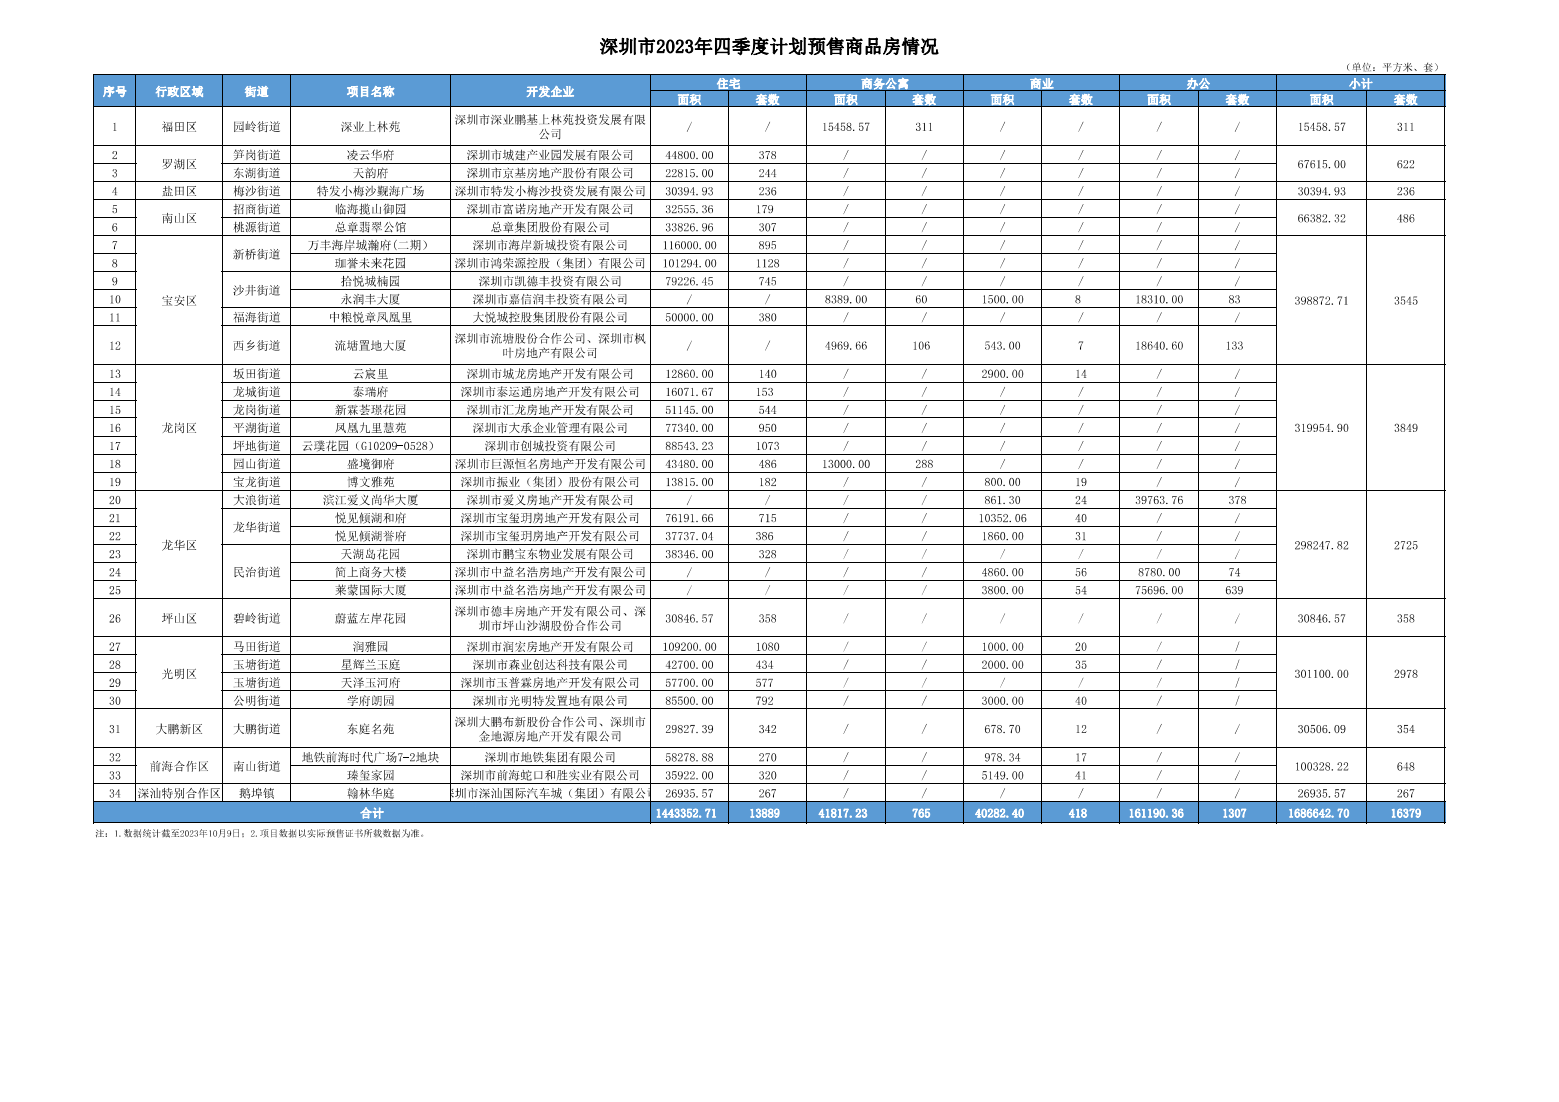 深圳：四季度计划入市商品房项目34个 供应住宅13889套